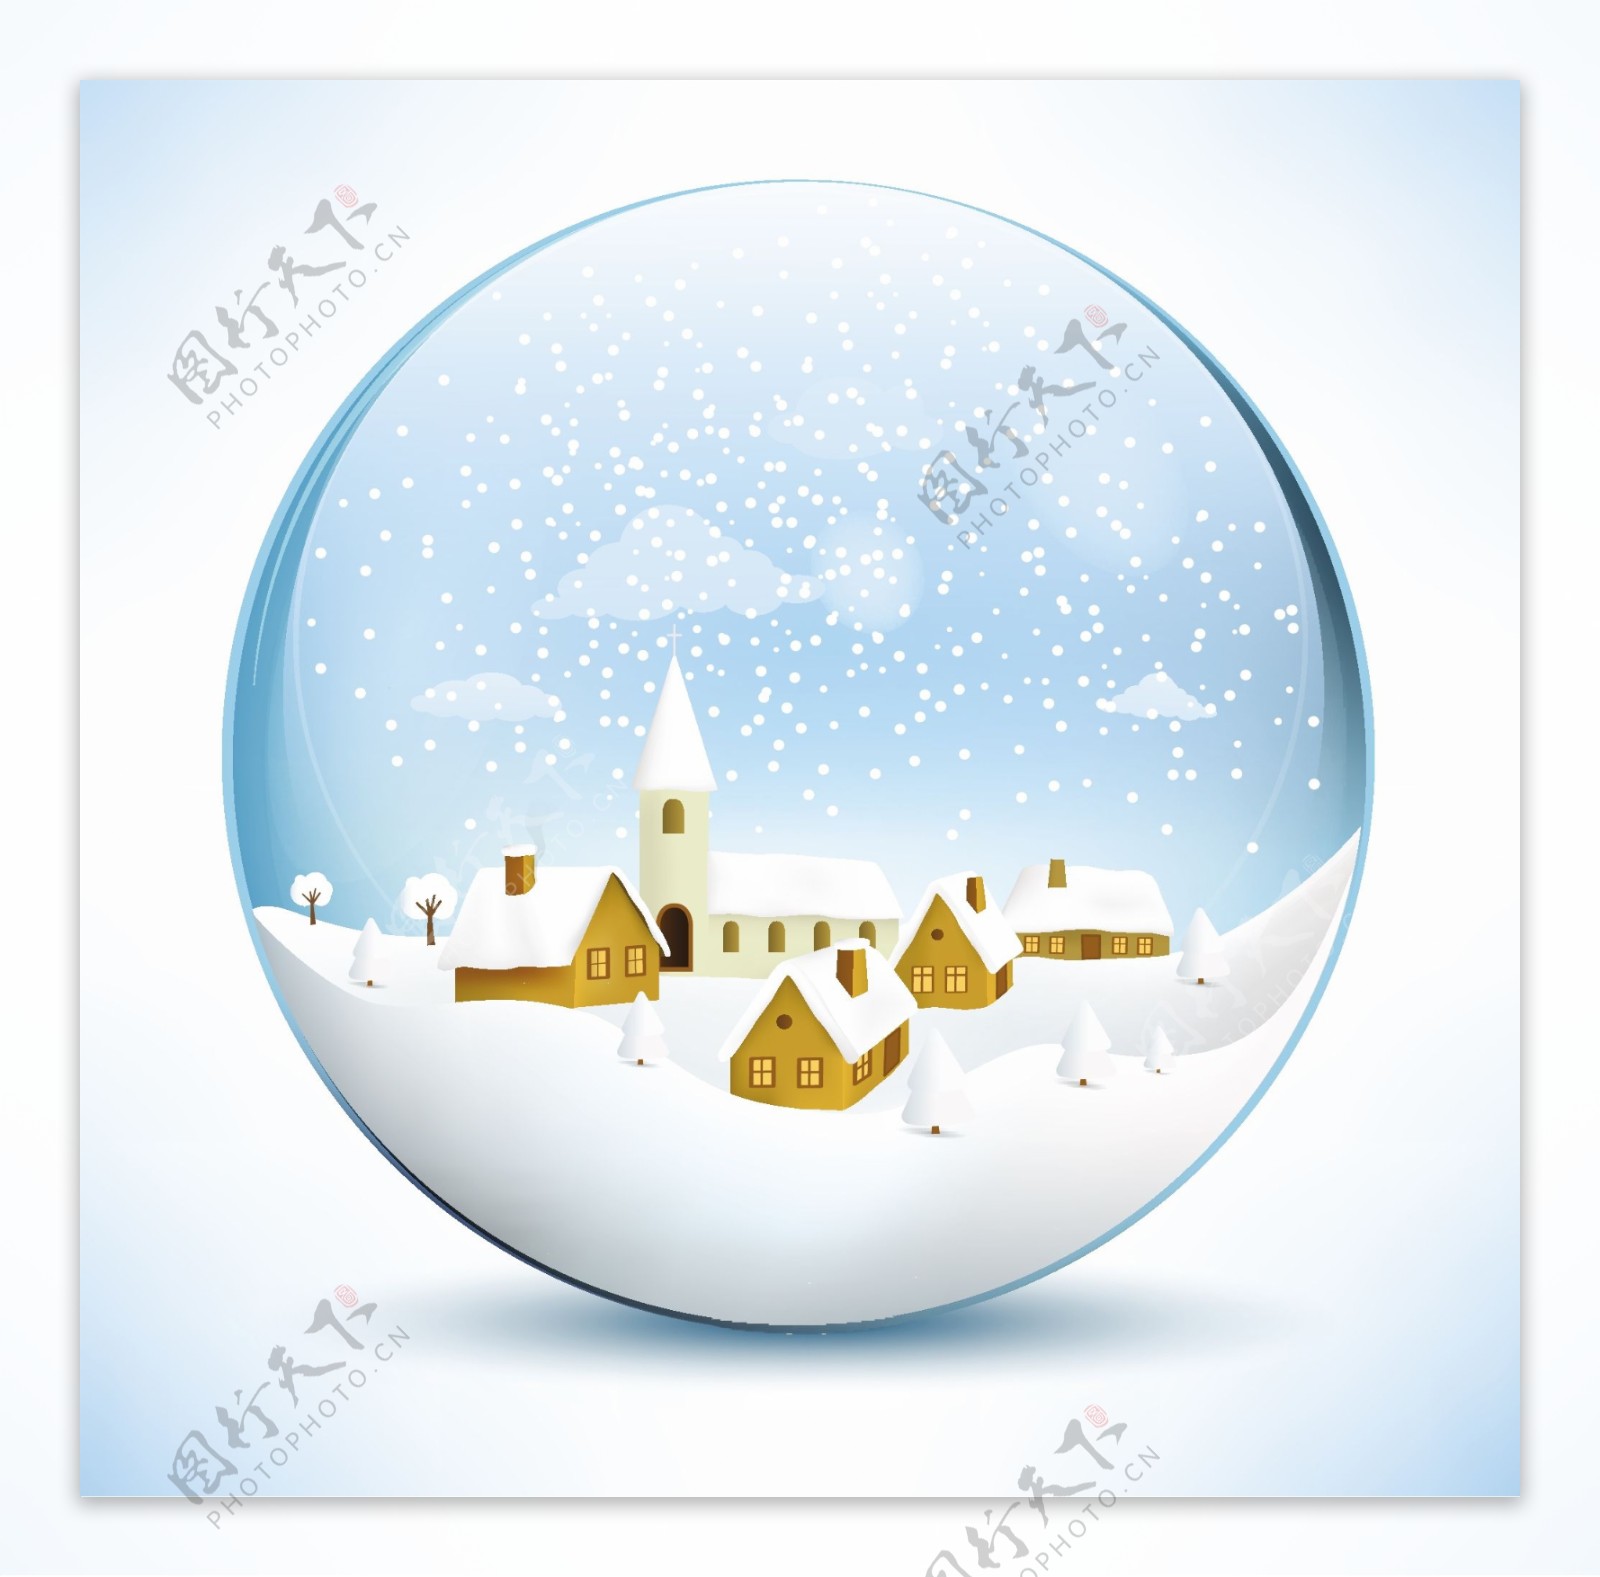 冬季圣诞水晶球矢量素材下载